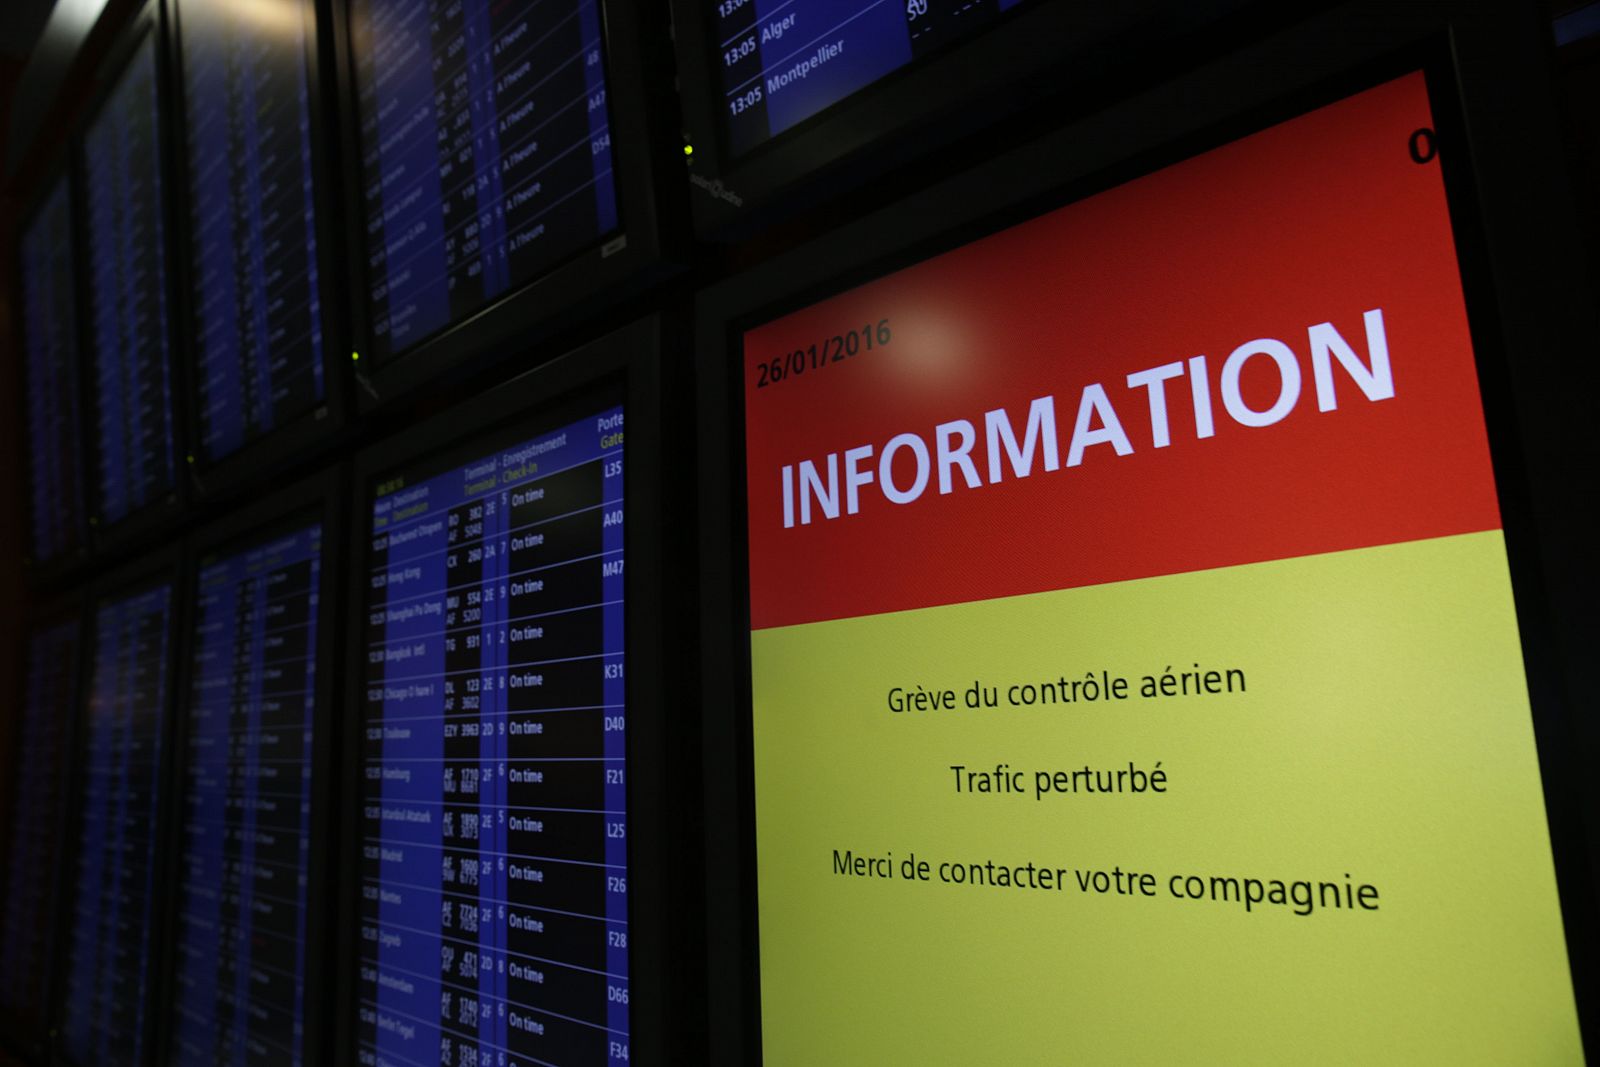 Un panel de información anuncia la huelga de controladores en el aeropuerto de Charles de Gaulle